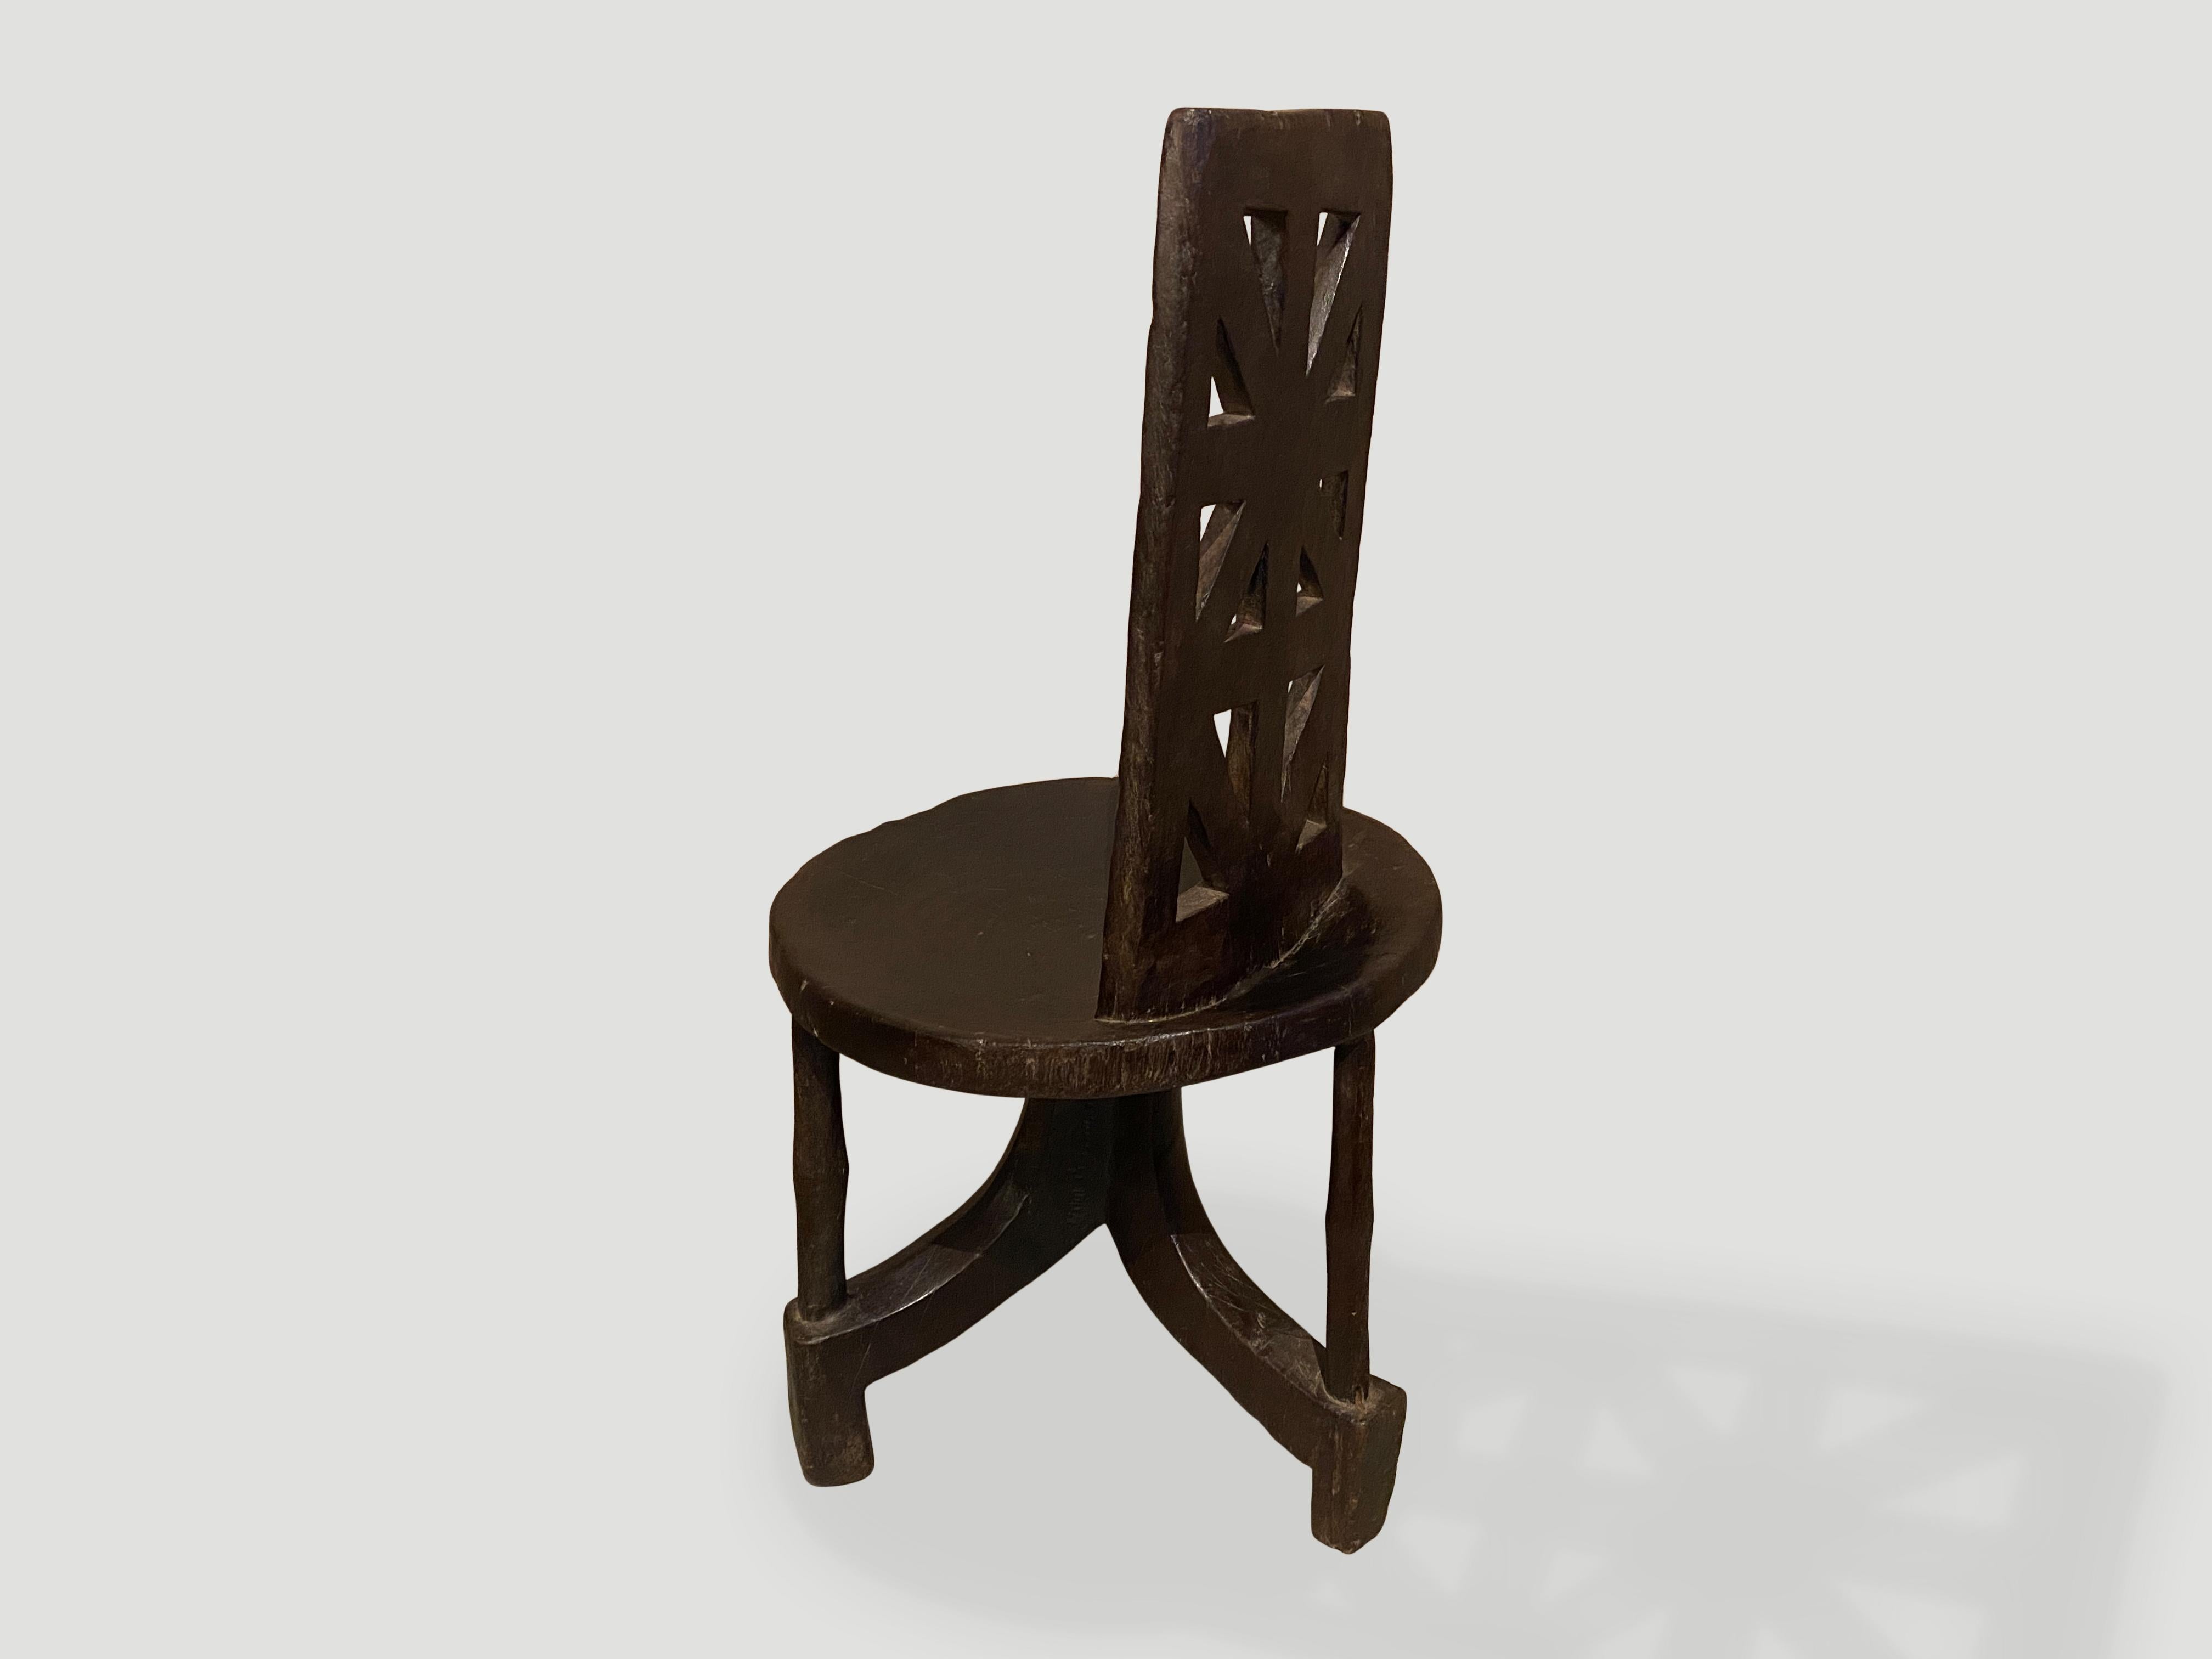 plastic chair price in ethiopia